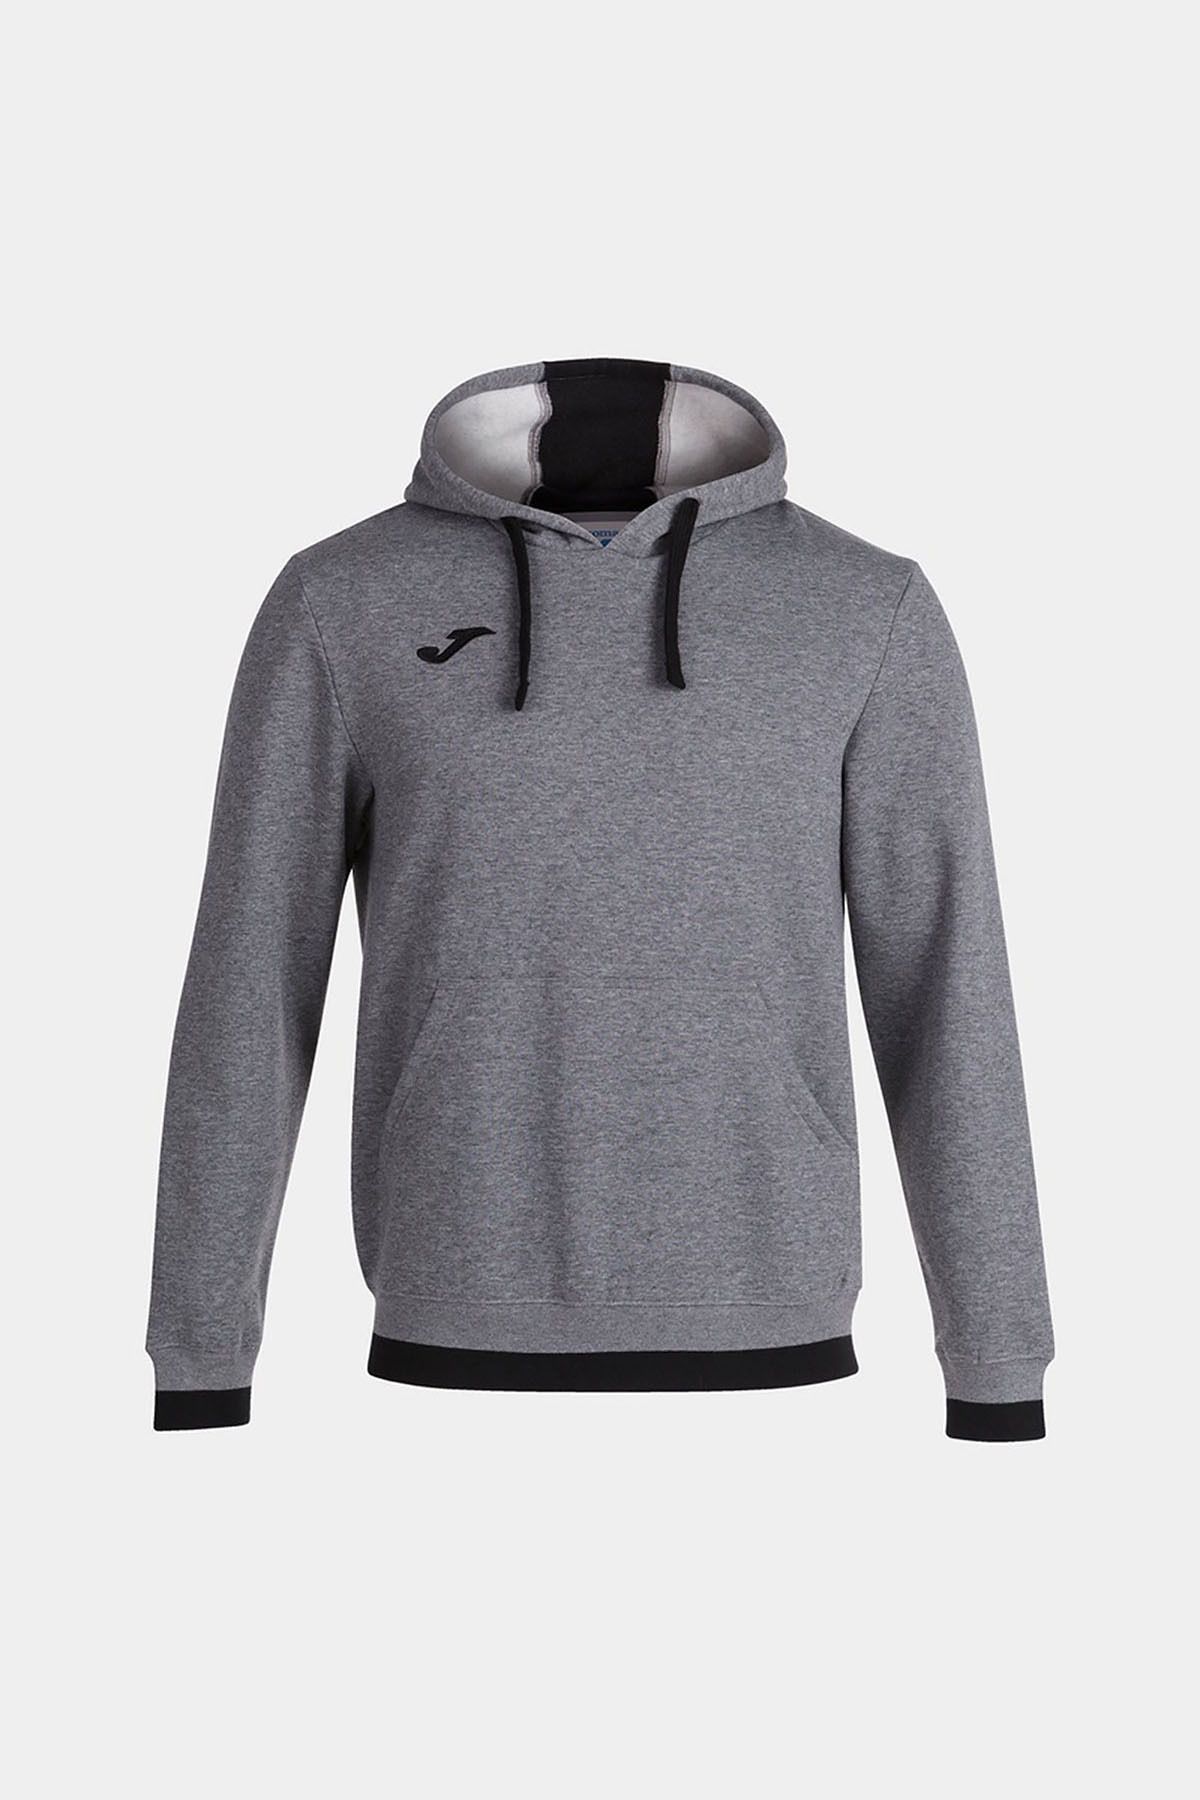 Joma Erkek Futbol Kamp Sweatshirt Confort Hoodie Melange Gray Black 101962.281